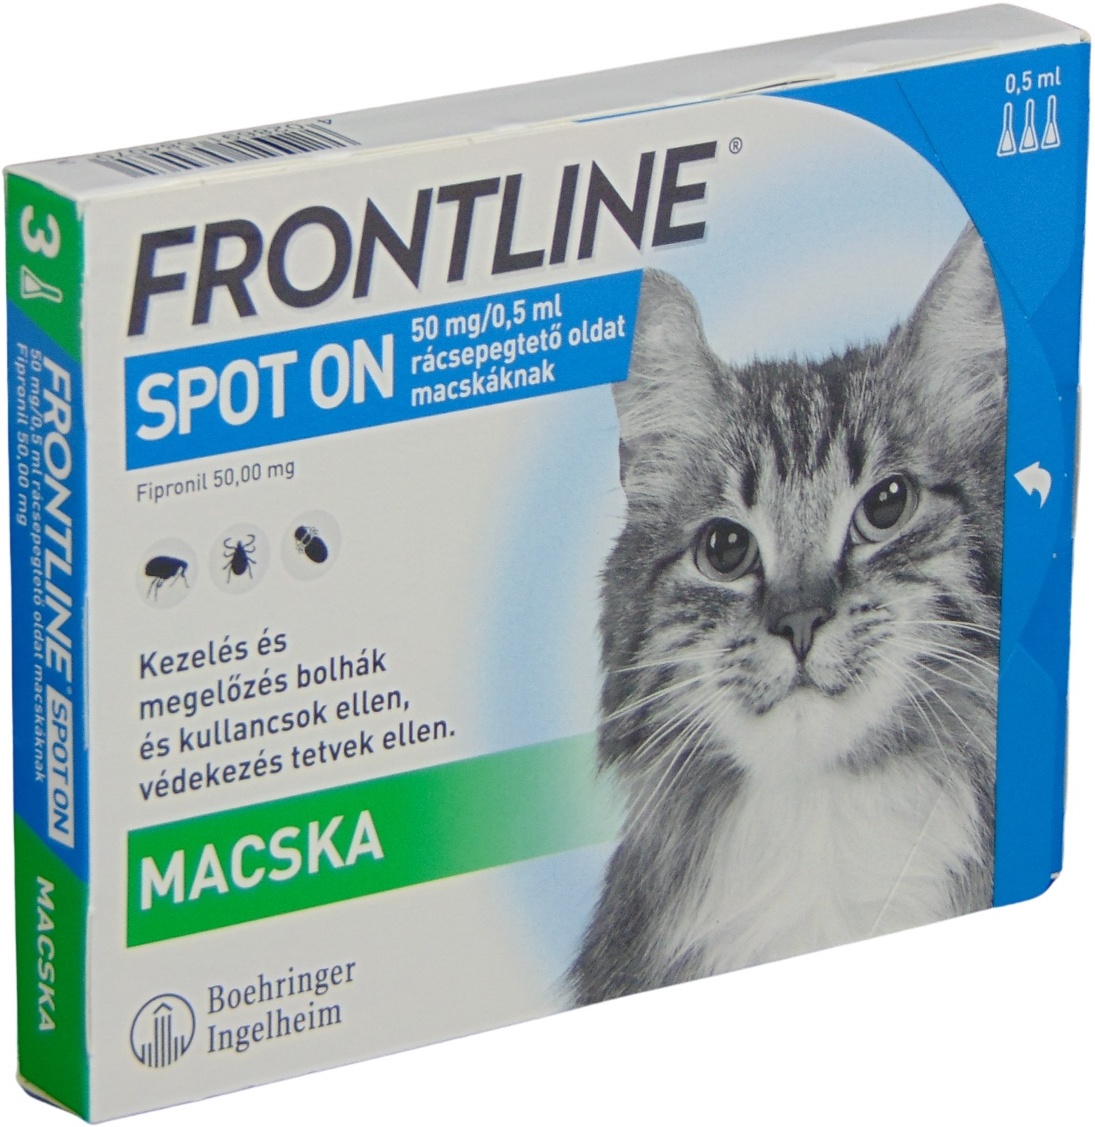 Frontline Spot On pisici